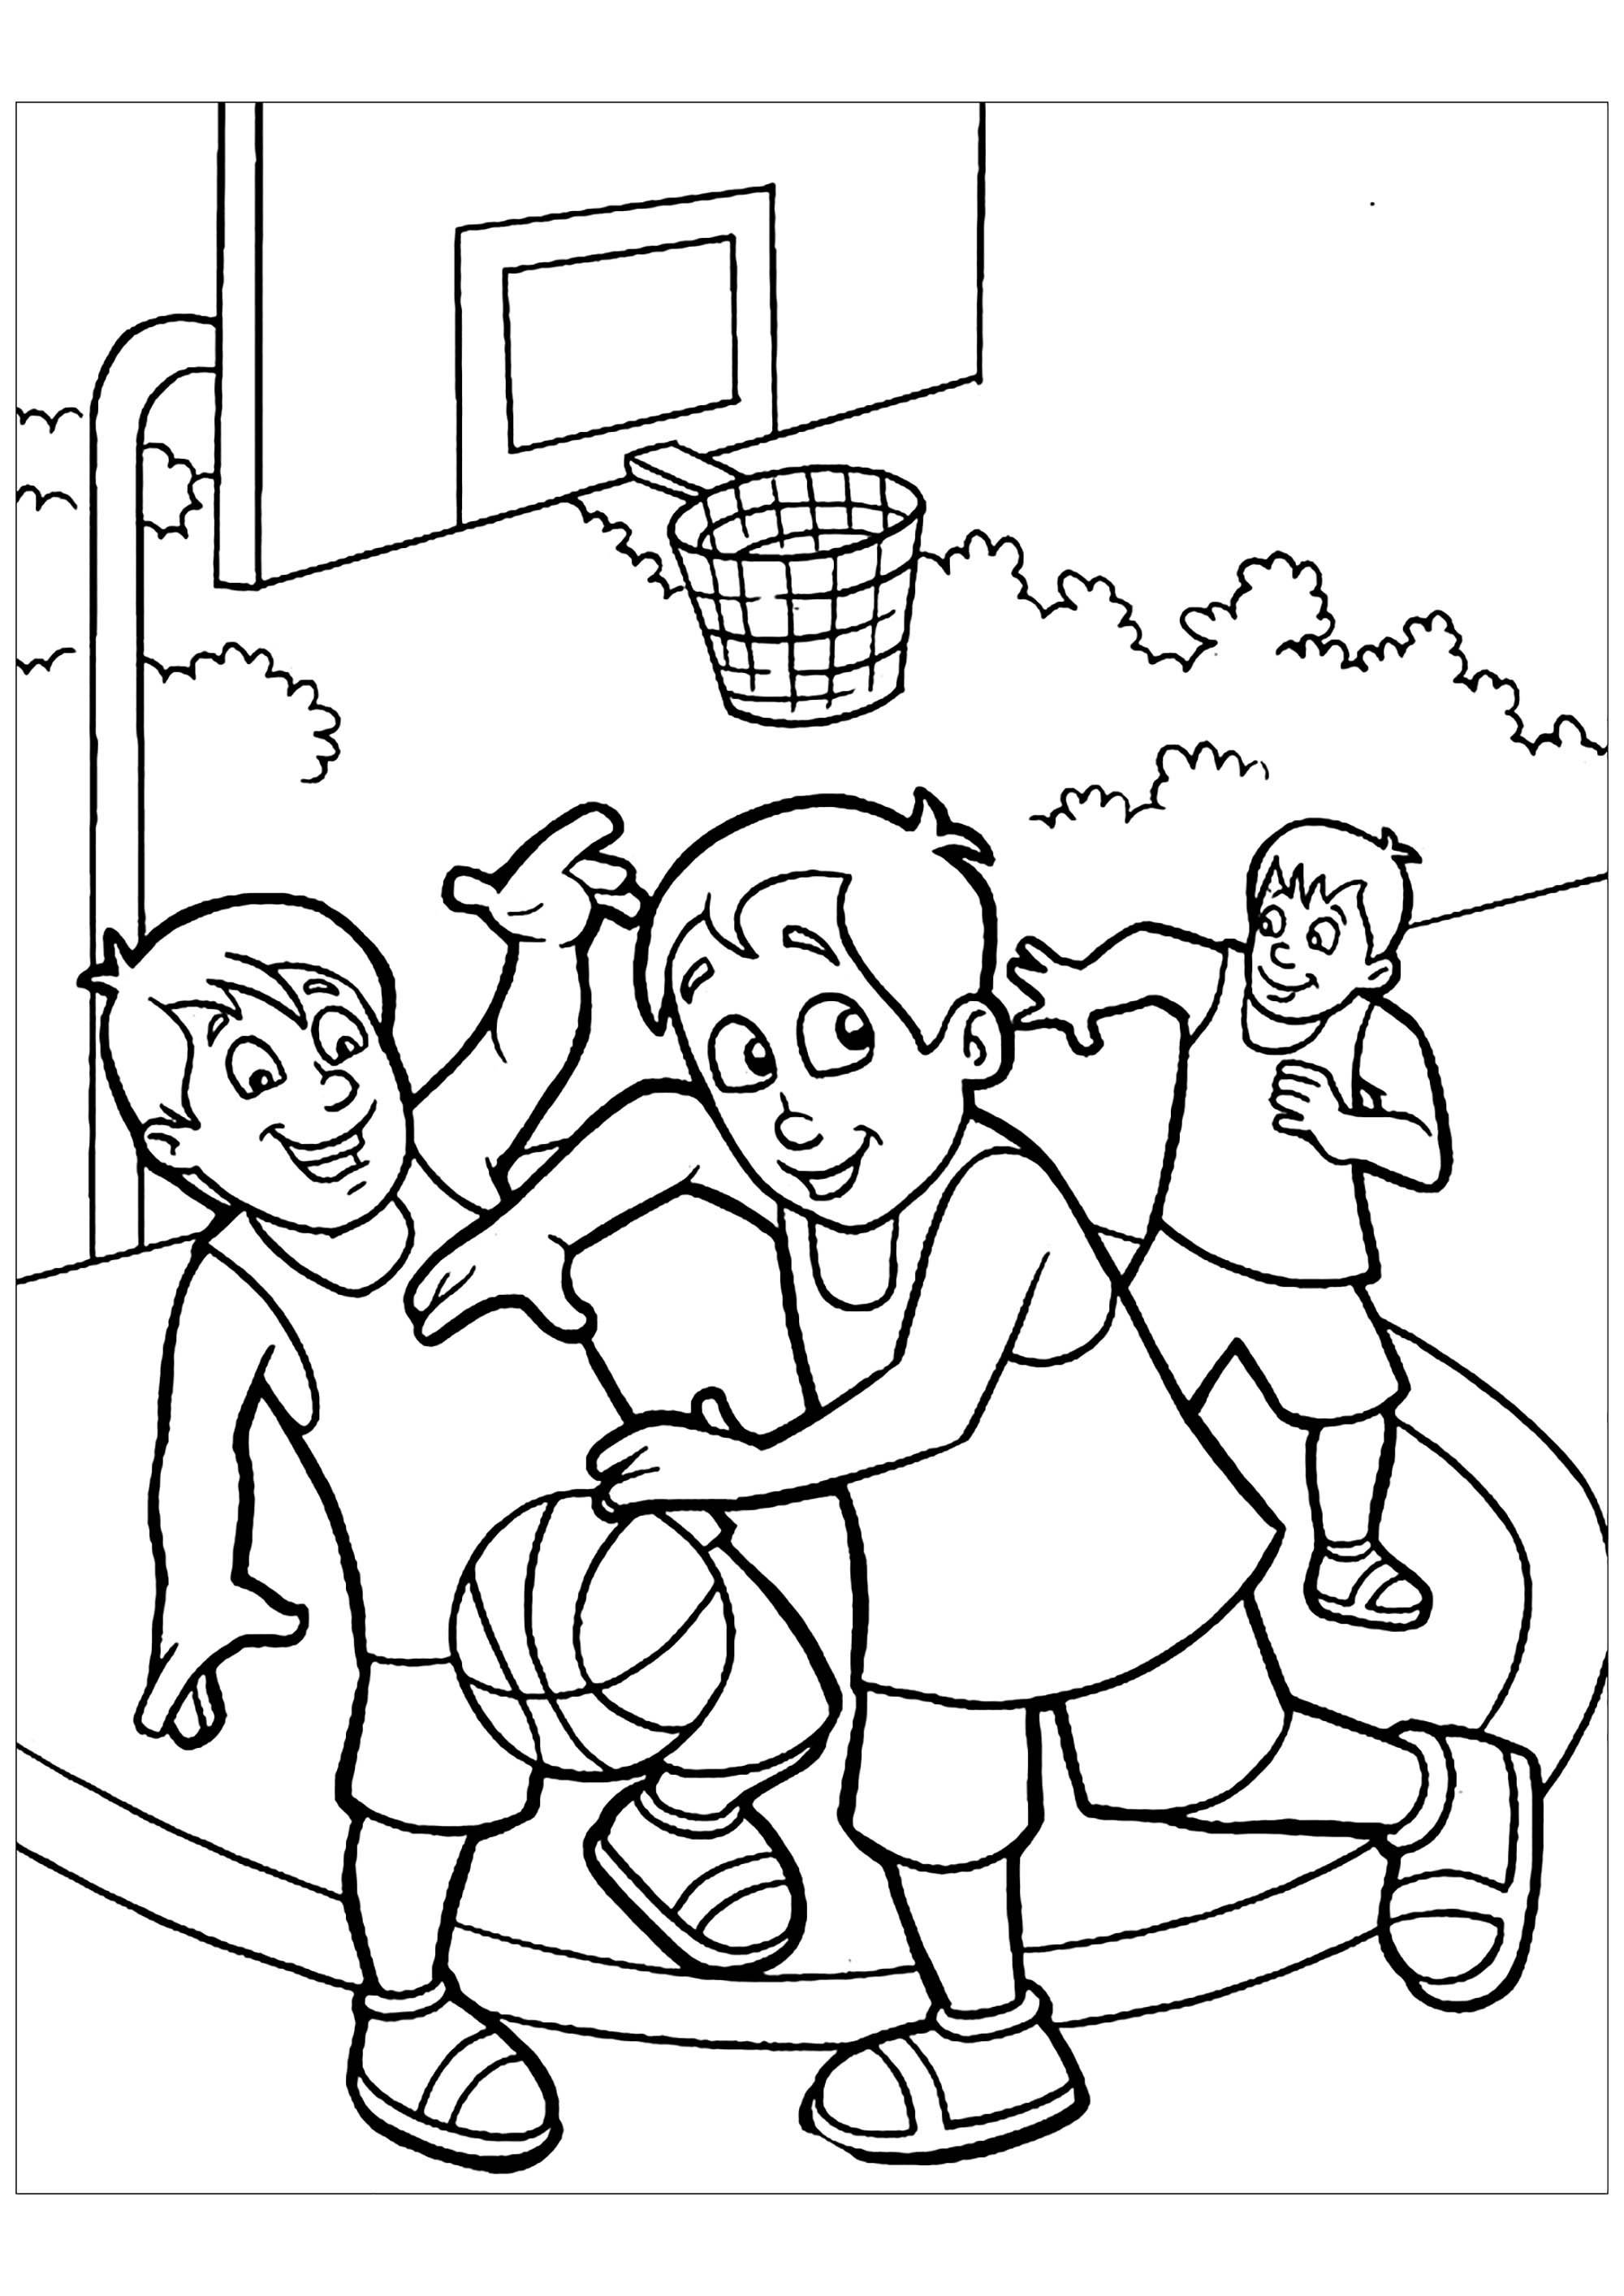 Раскраски Спорт и Спортивные игры для детей распечатать виды Спорта, здоровье, физкультура